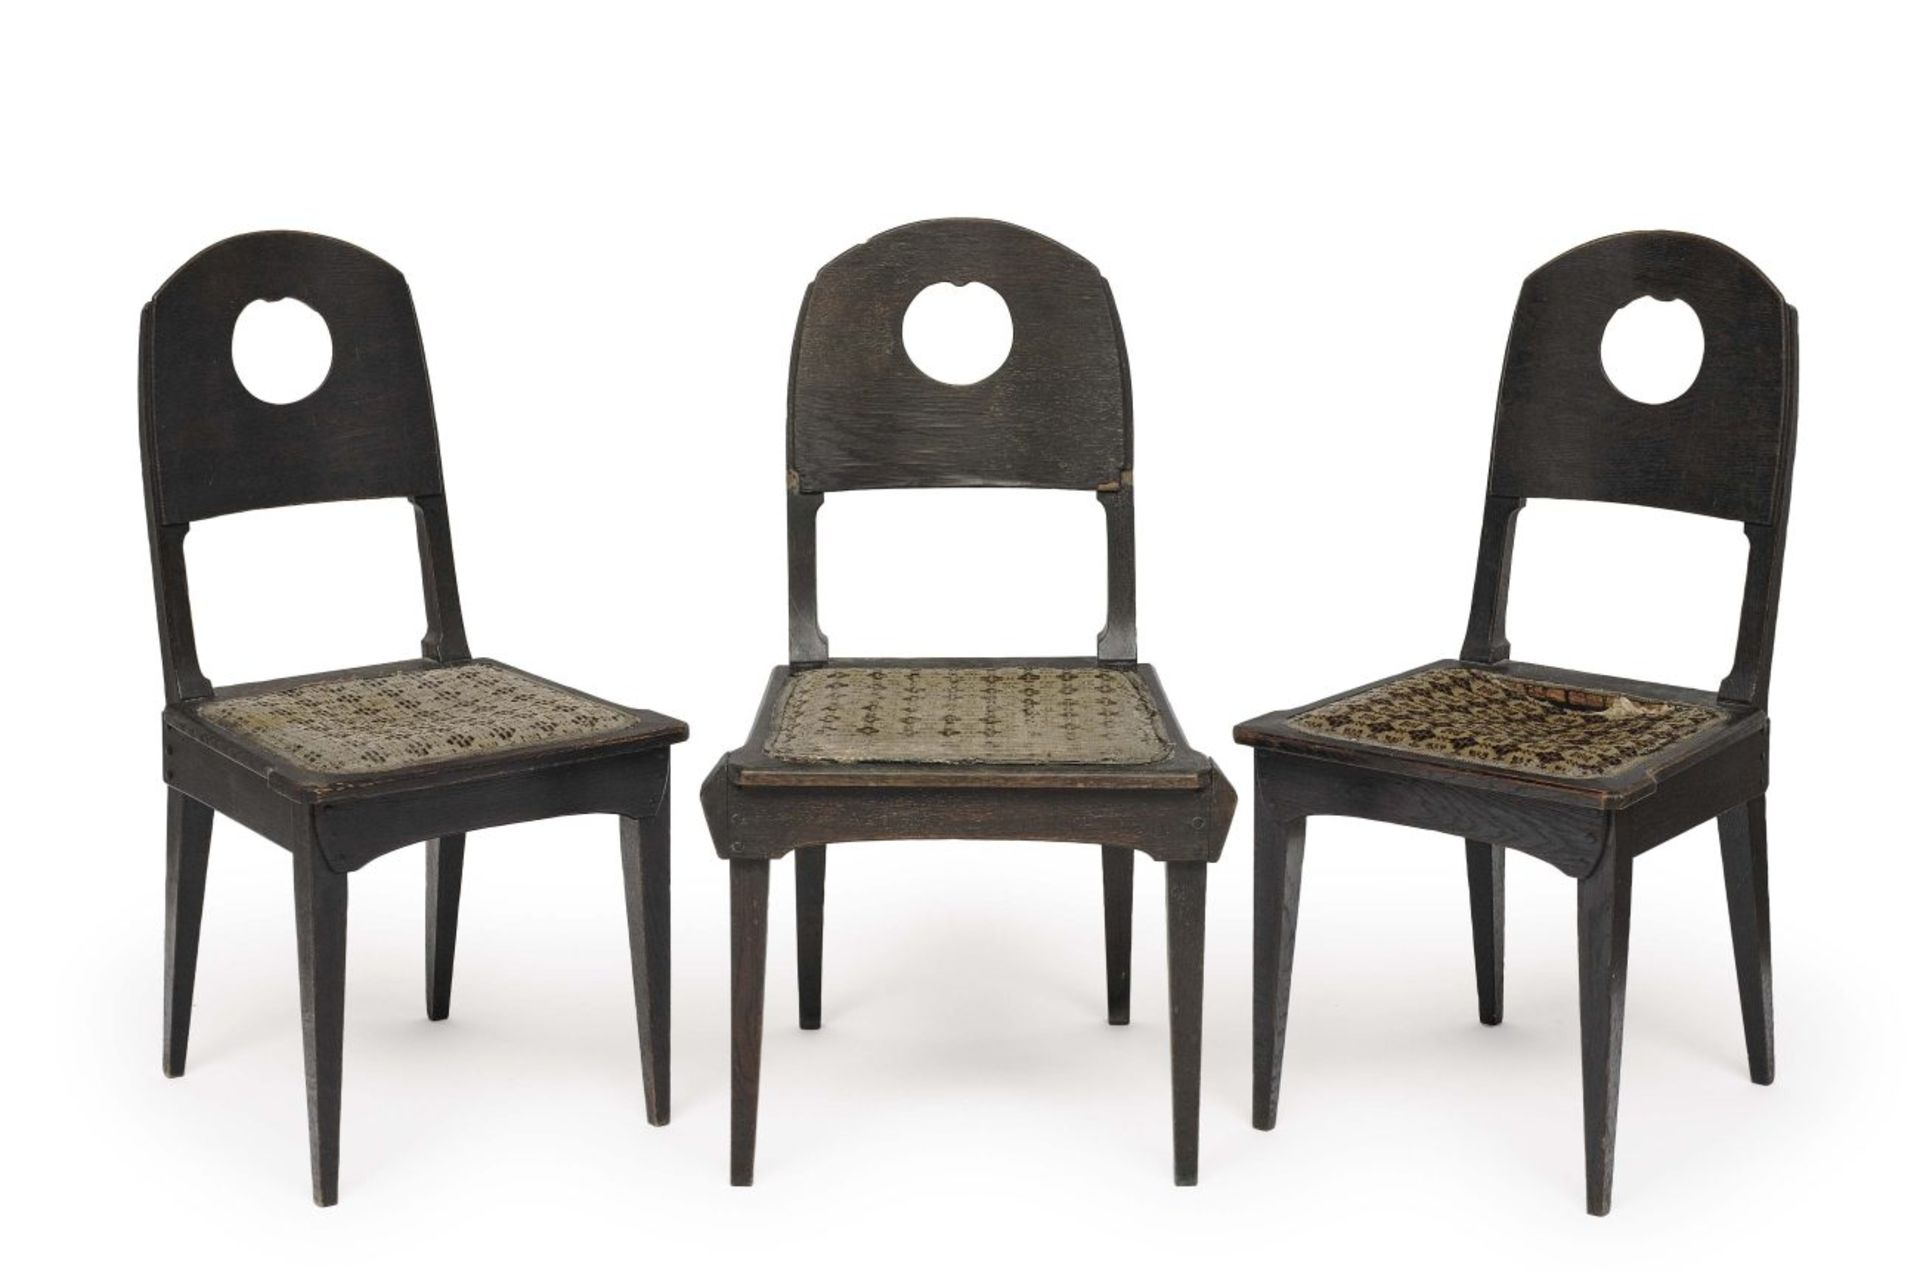 Three chairsRichard Riemerschmid, 1905, manufactured by Dresdener Werkstätten Oak, dark stained.